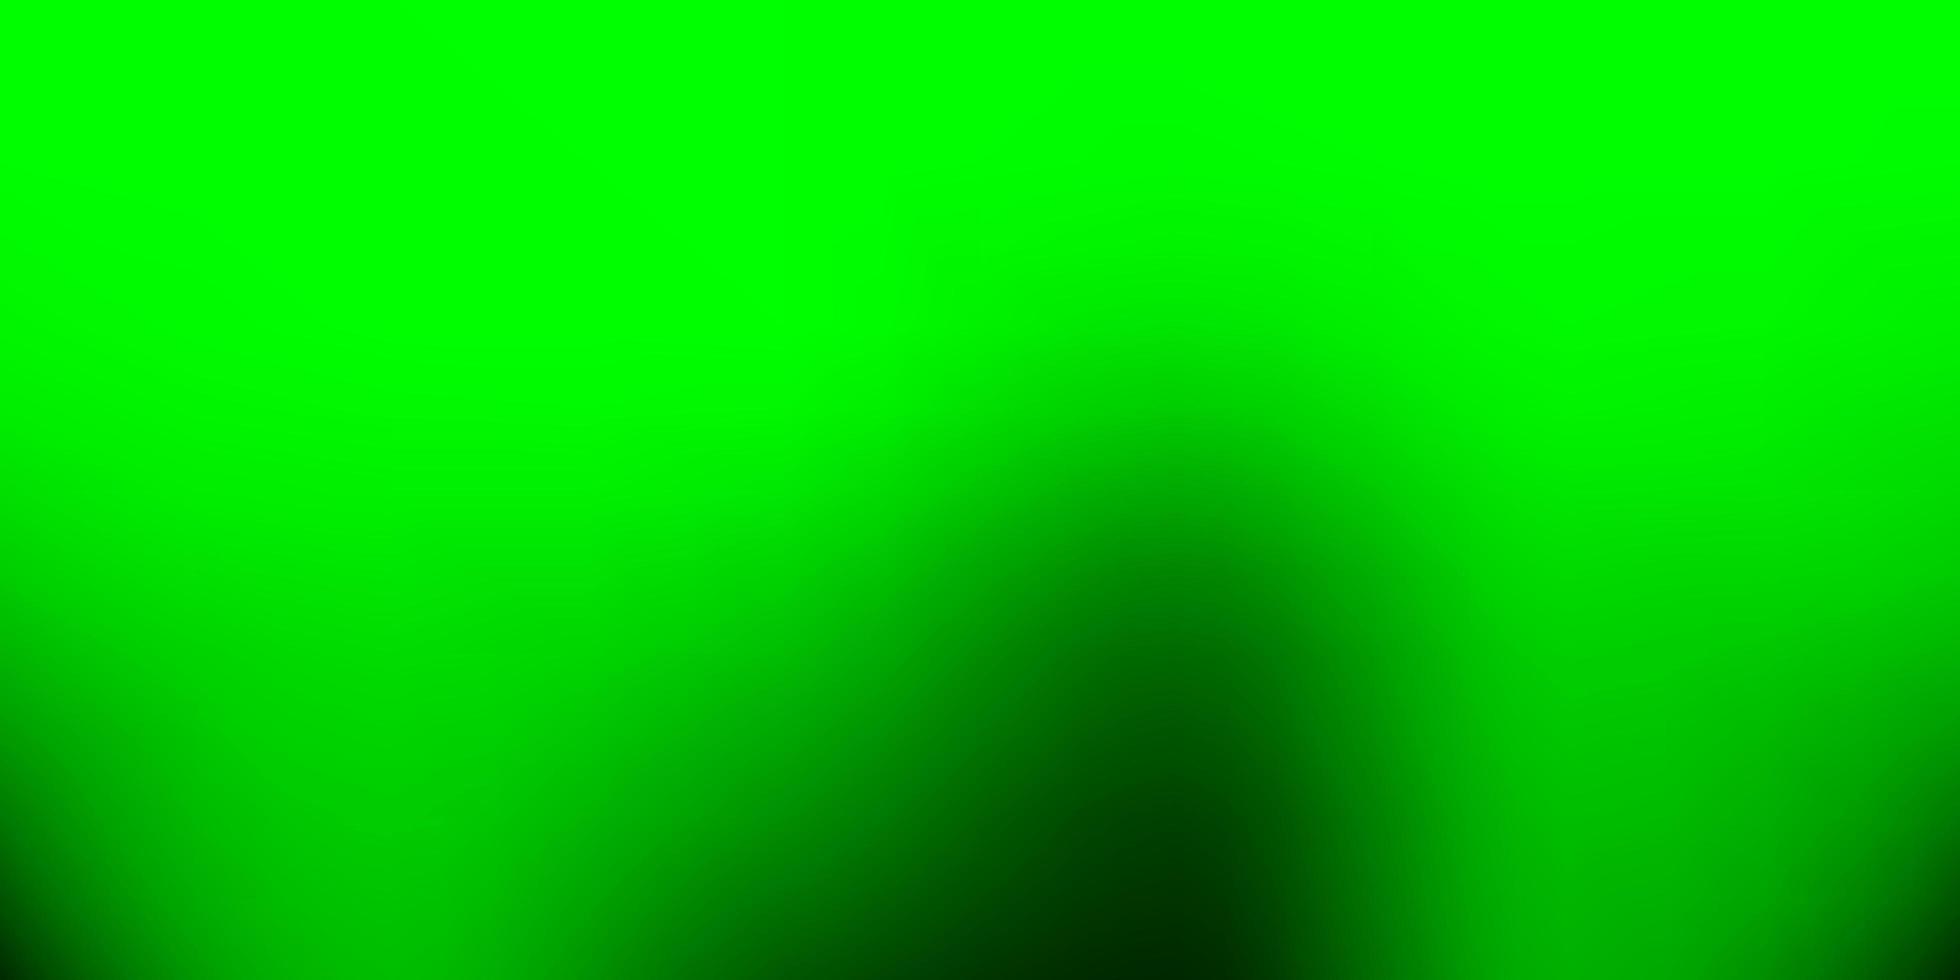 ljusgrön gul suddighetsbakgrund för vektor